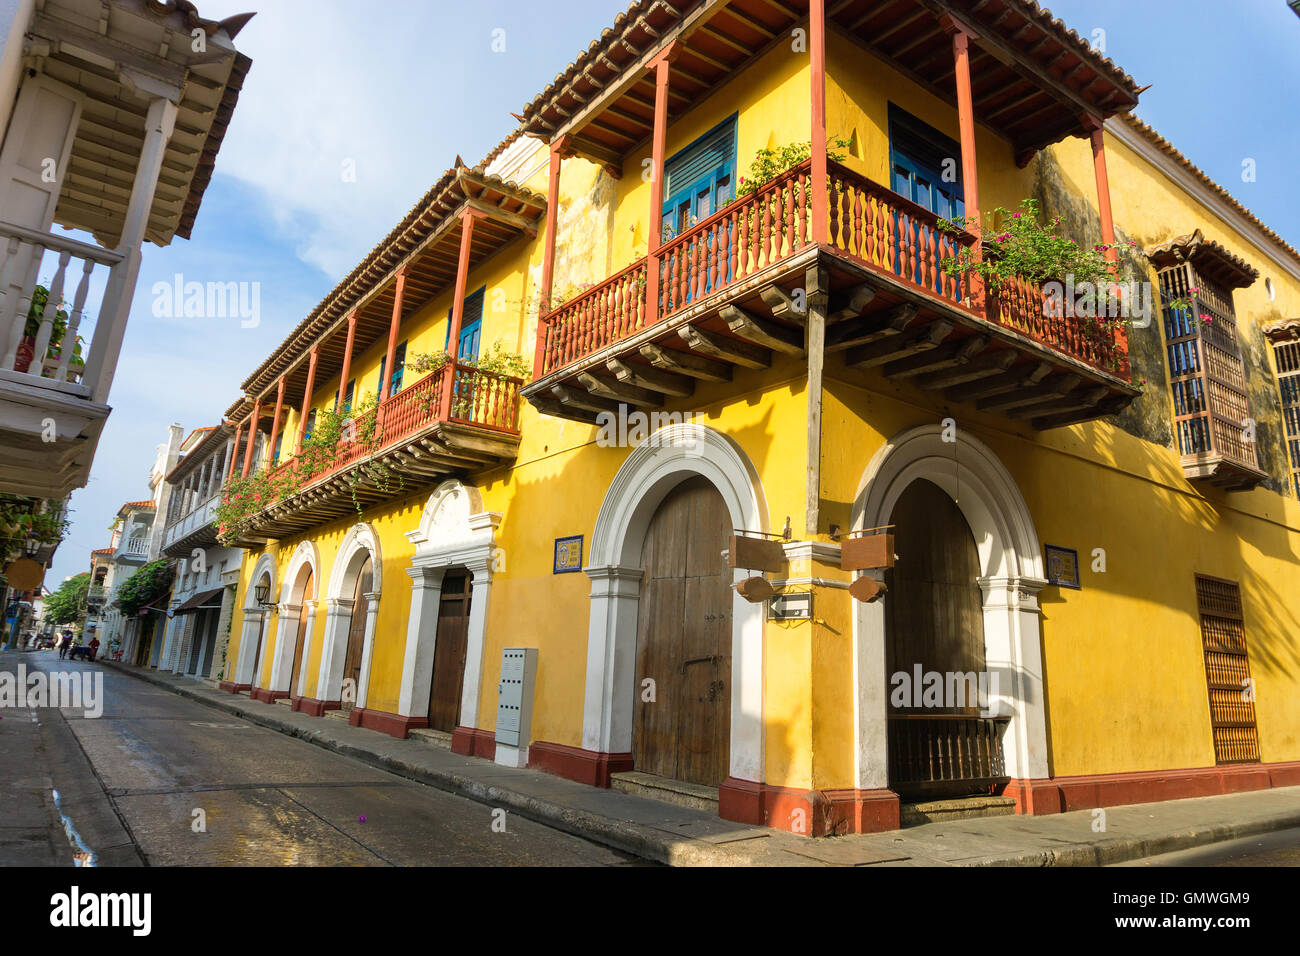 Giallo coloniale angolo di strada a Cartagena, Colombia Foto Stock